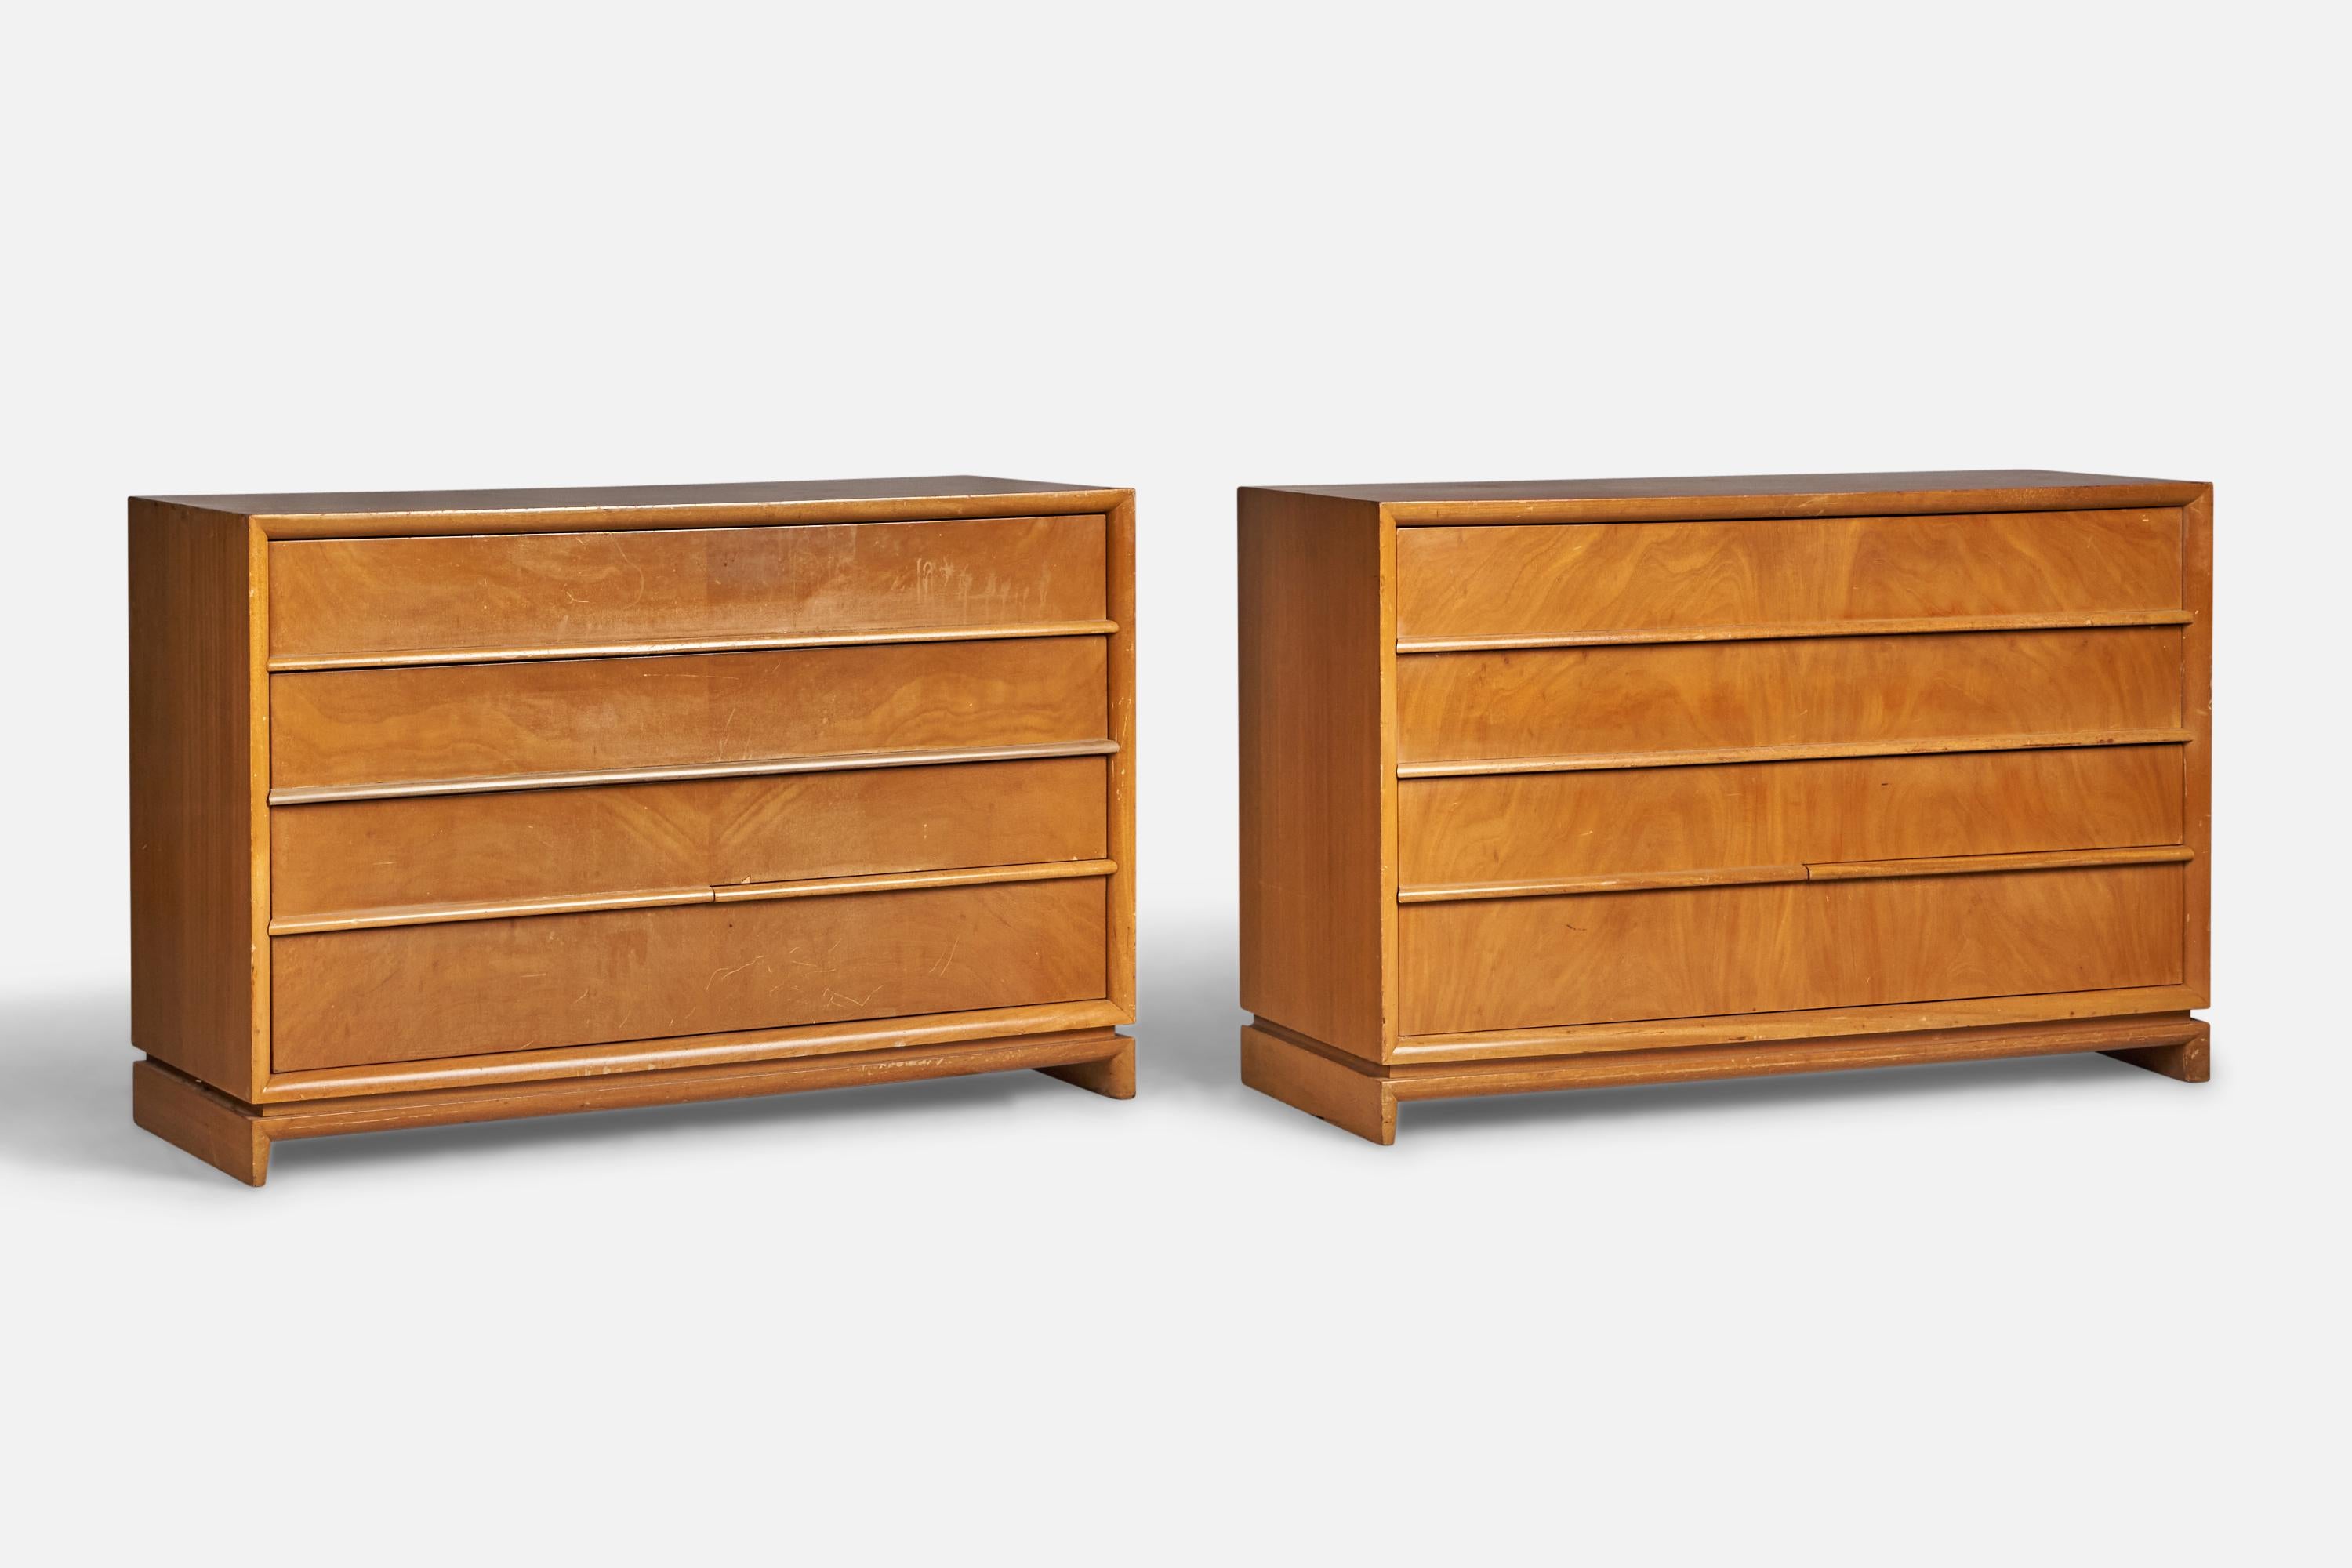 Ein Paar Kommoden aus Nussbaumholz, entworfen und hergestellt von Red Lion Furniture, USA, 1940er Jahre.
Zustand: Nachbesserungen durchgeführt. Flecken und Abdrücke sind auf den Oberseiten stärker ausgeprägt. 